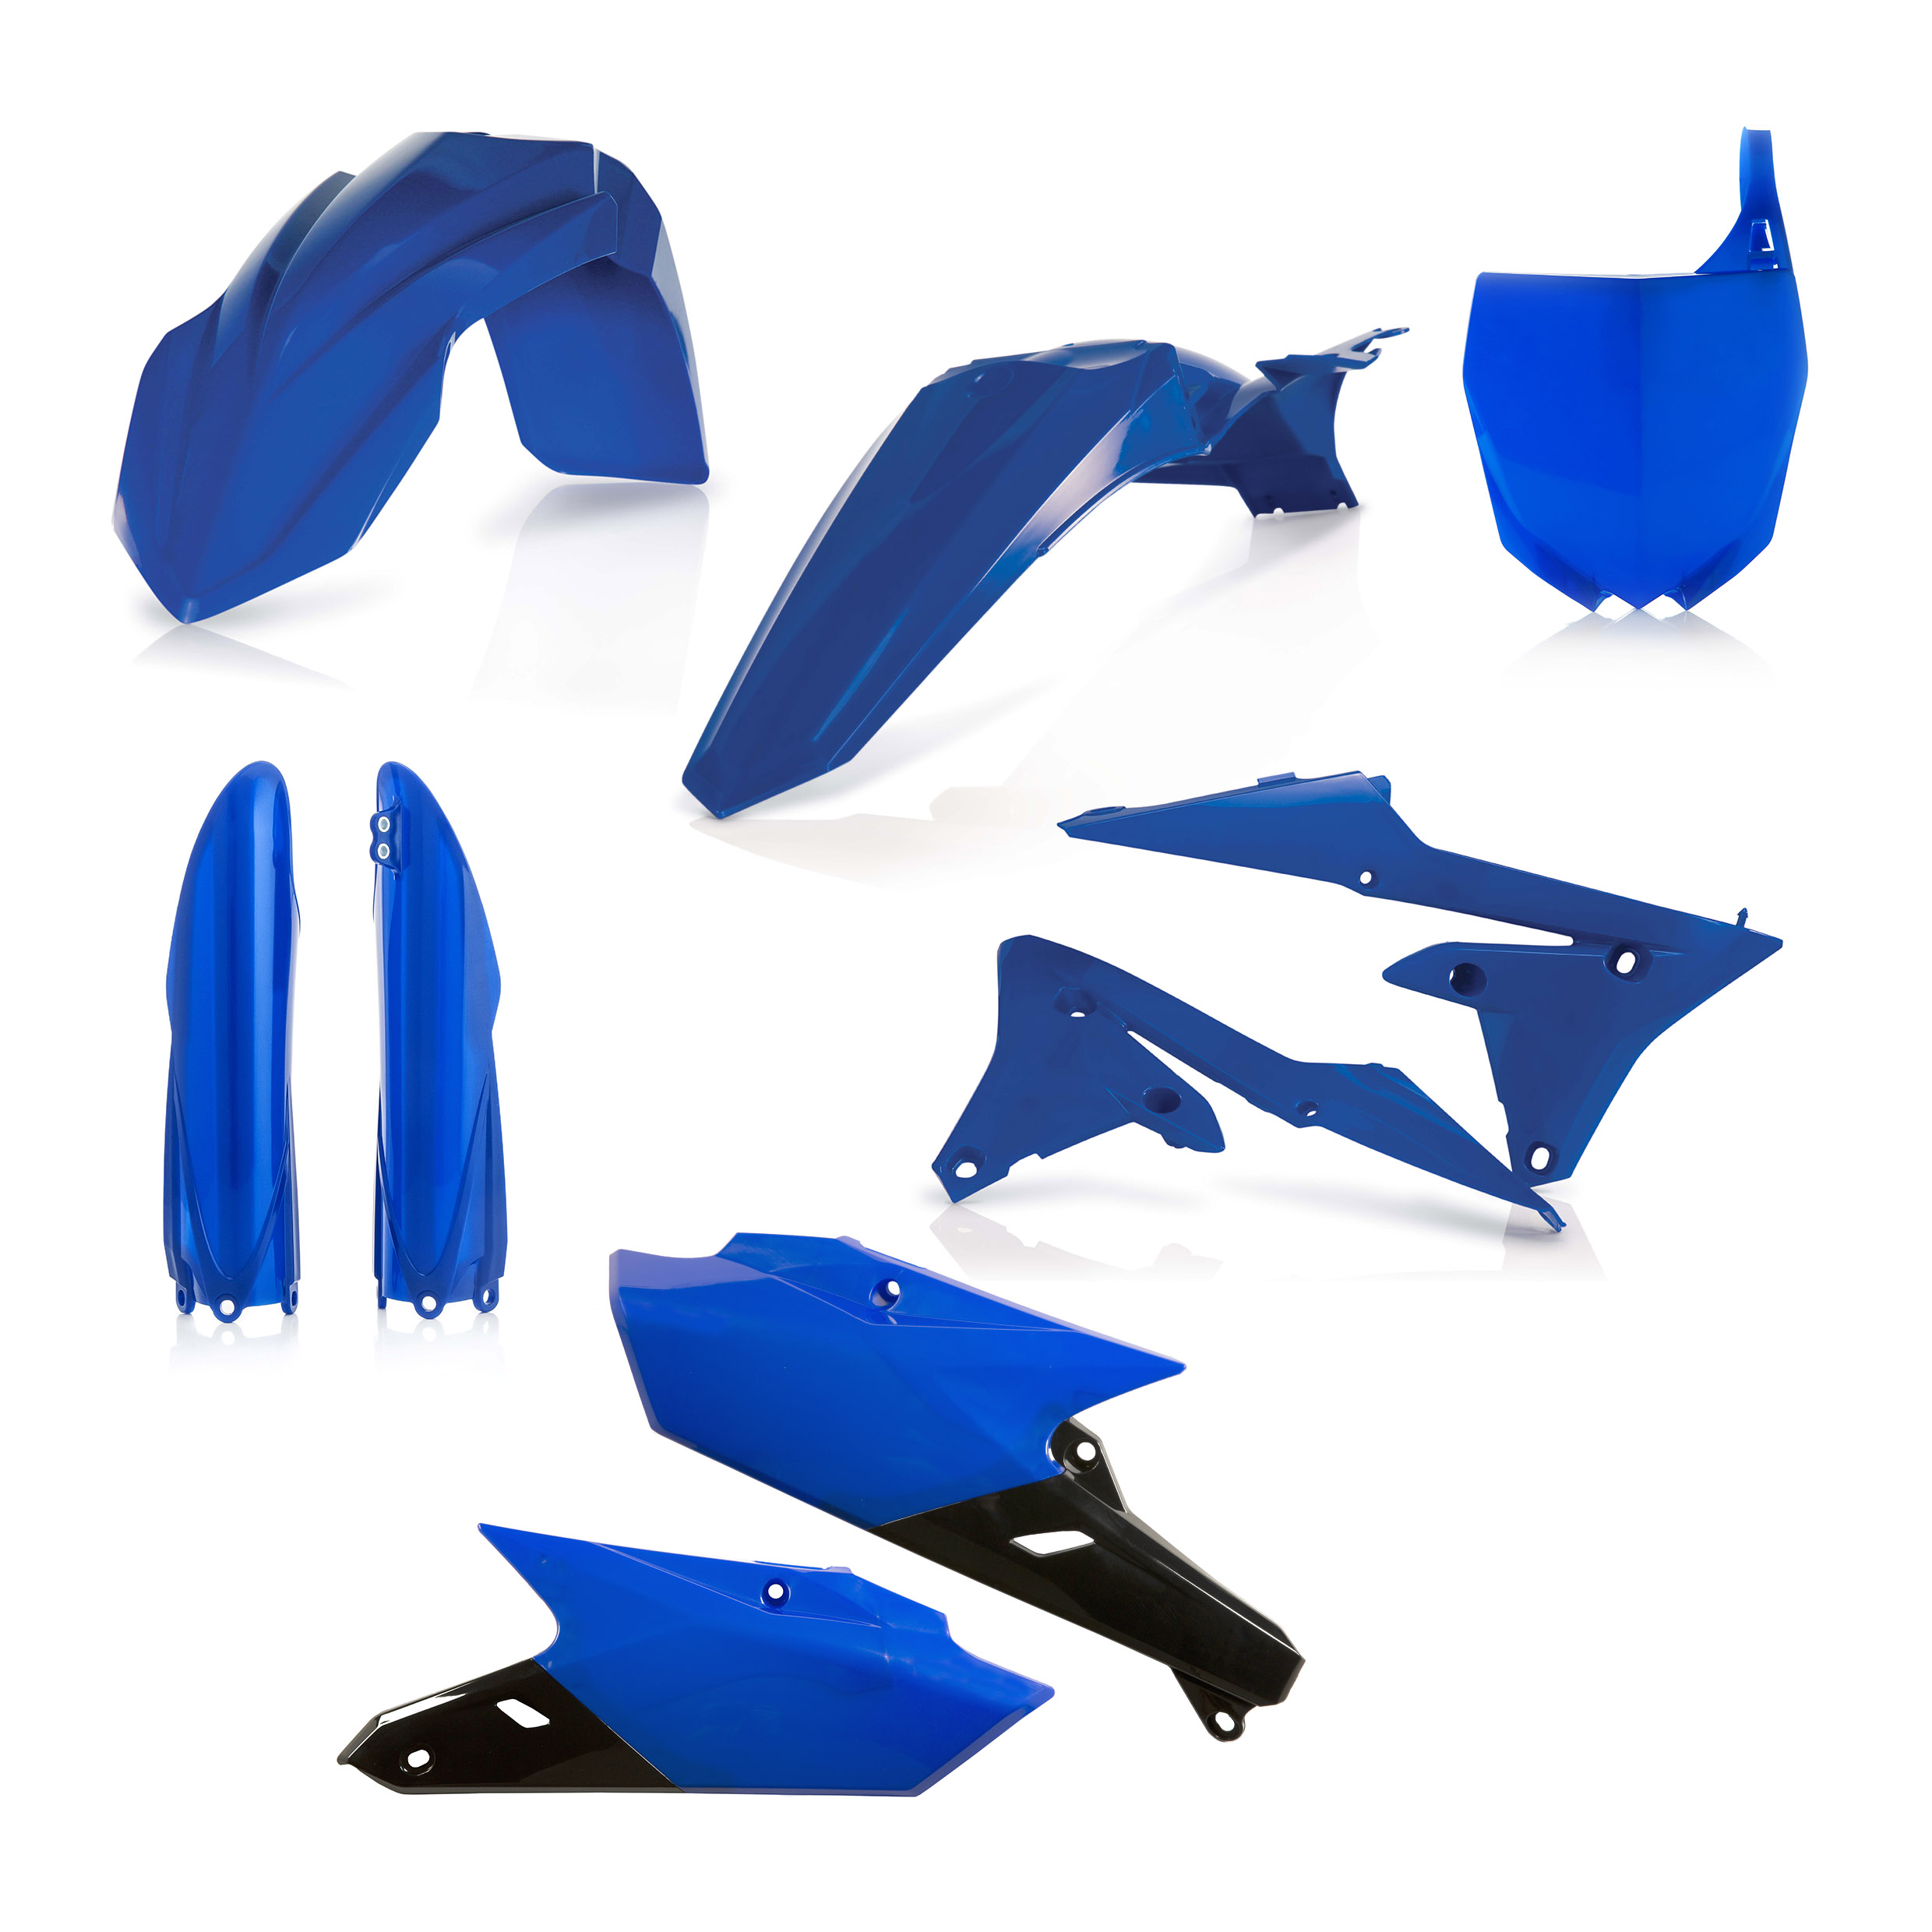 Plastikteile für deine Yamaha YZ 250/450 in blau bestehend aus Kotflügel vorn Kotflügel hinten Kühlerspoiler Seitenteile Gabelschützer Startnummerntafel